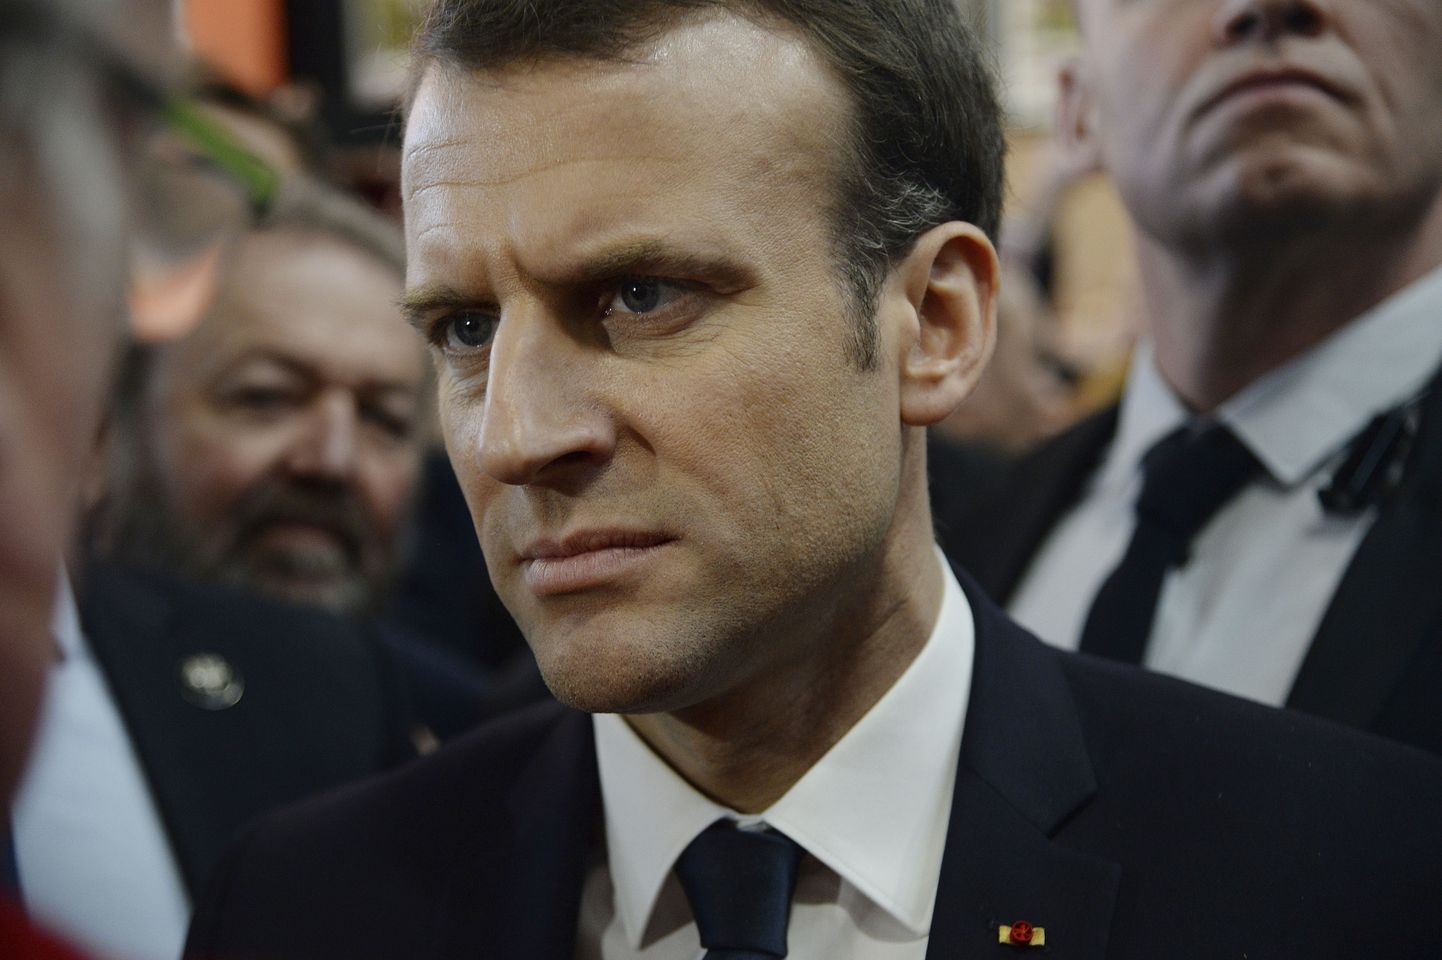 Prantsuse president Emmanuel Macron laupäeval Pariisis põllumajandusmessil.